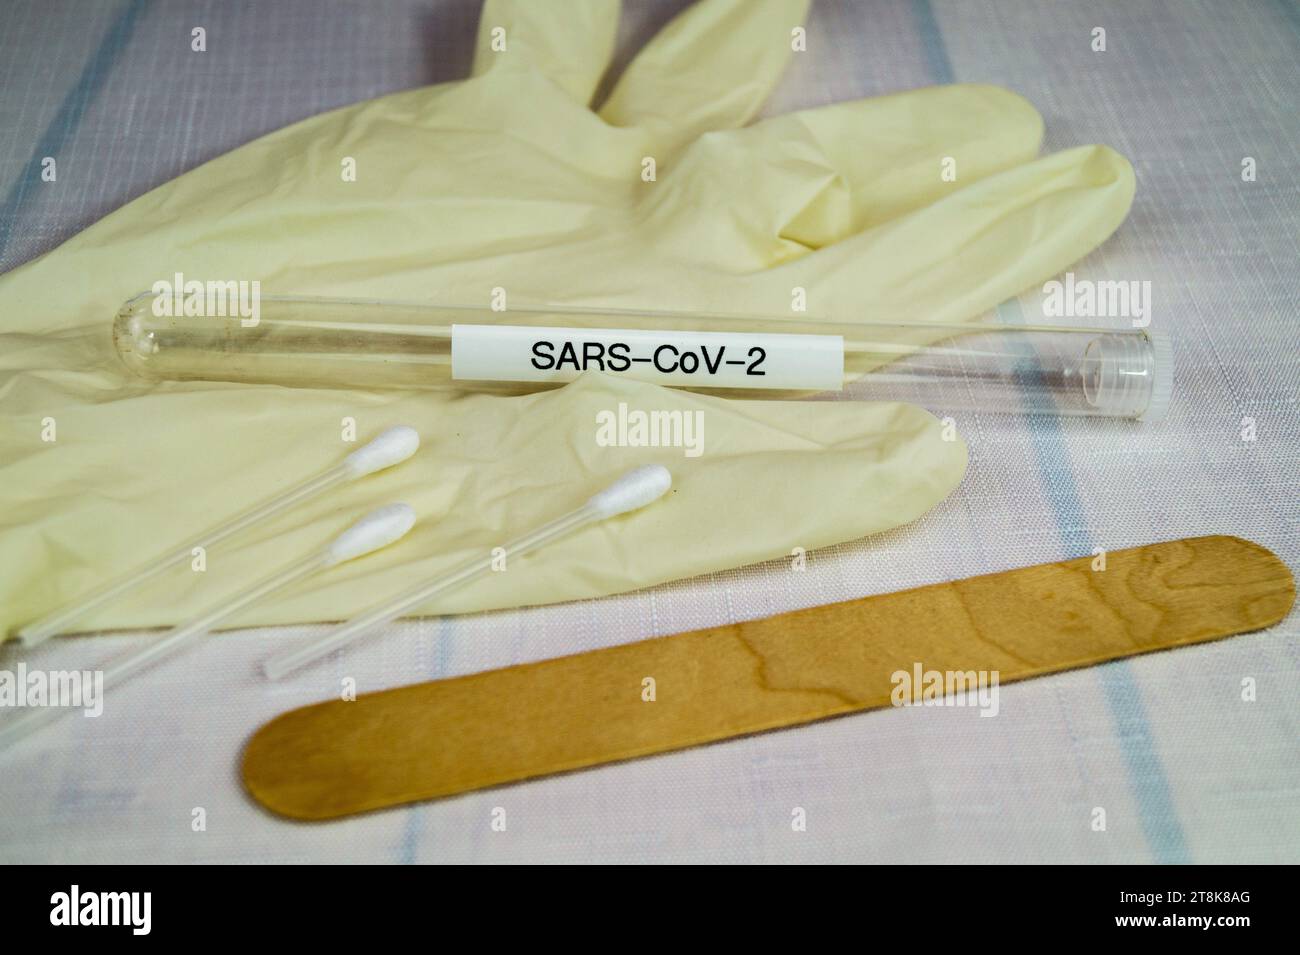 Corona test tubule, latex glove, cotton swab and spatula, 5 Stock Photo